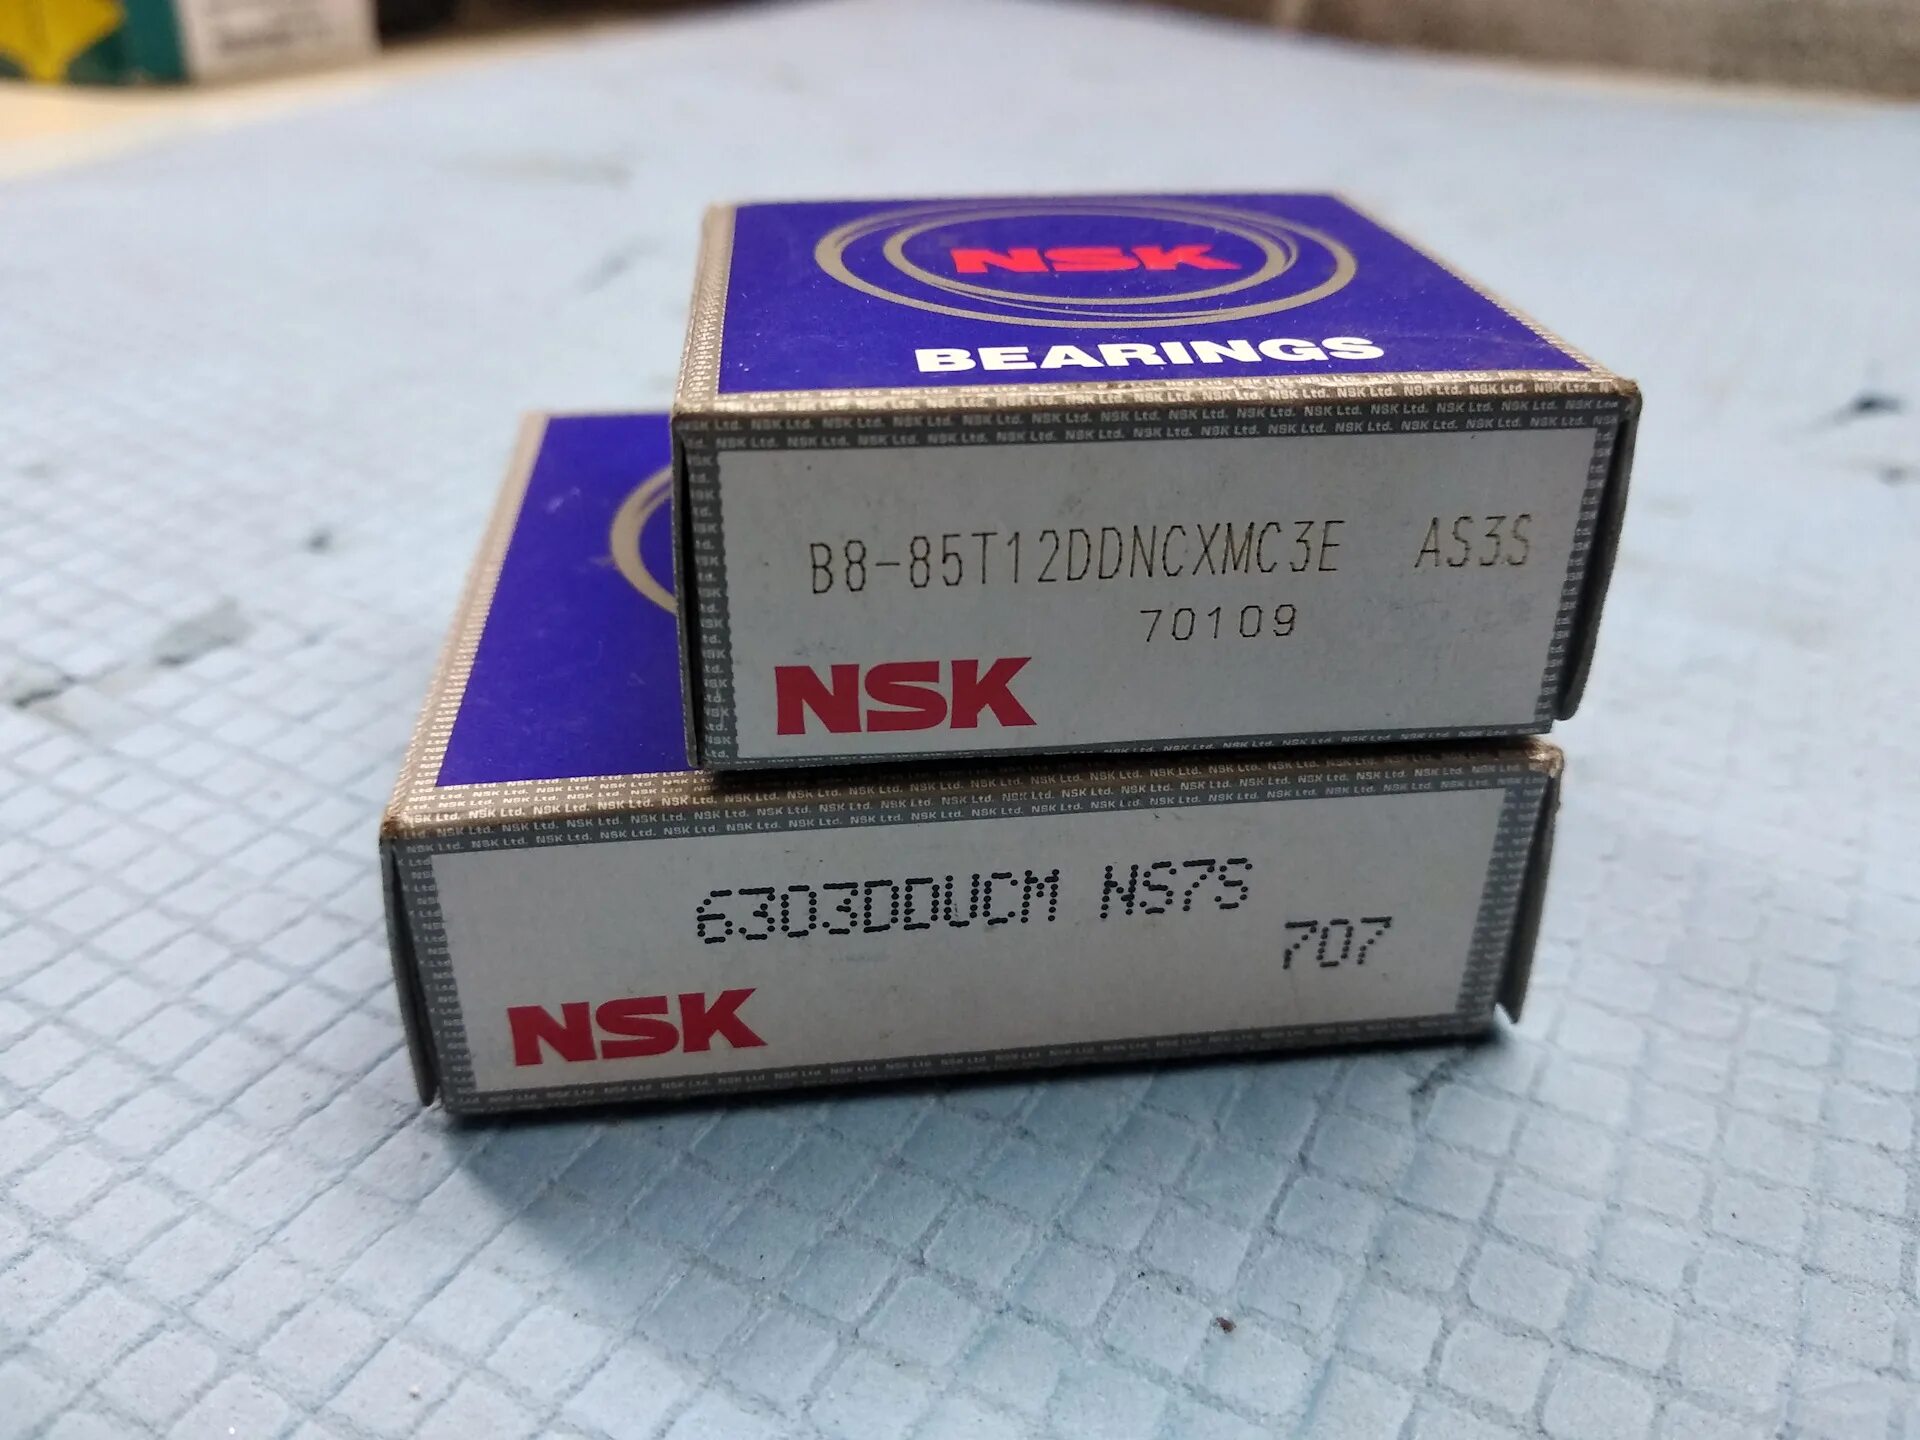 С 85 no 8. NSK 6303dducm. B885t12ddncxmc3e NSK подшипник генератора. B8-85t12ddncxmc3e. B885t12ddncxmc3e.